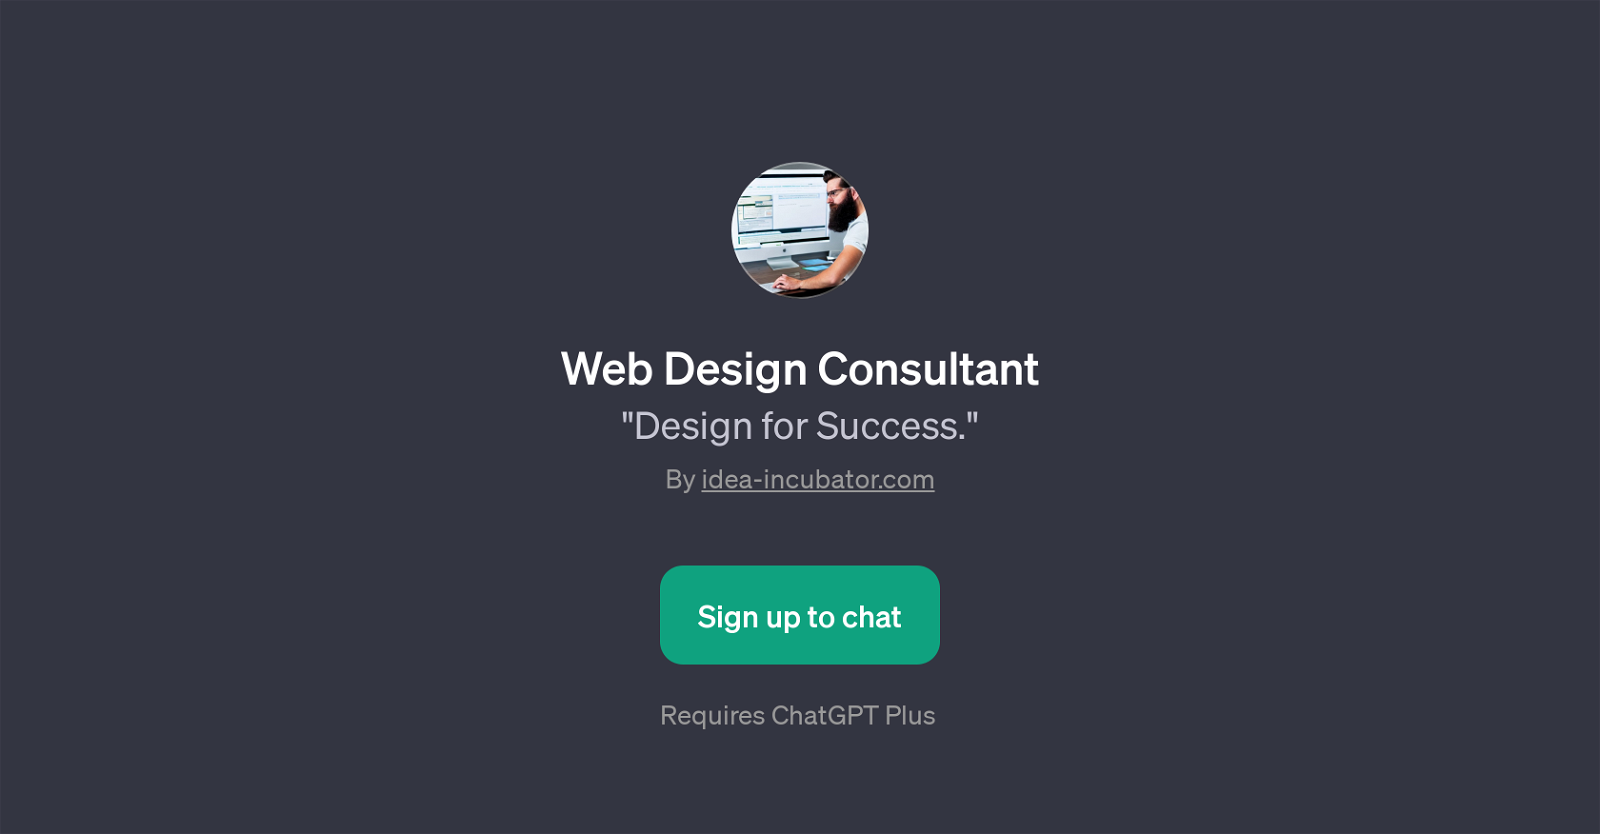 Web Design Consultant website